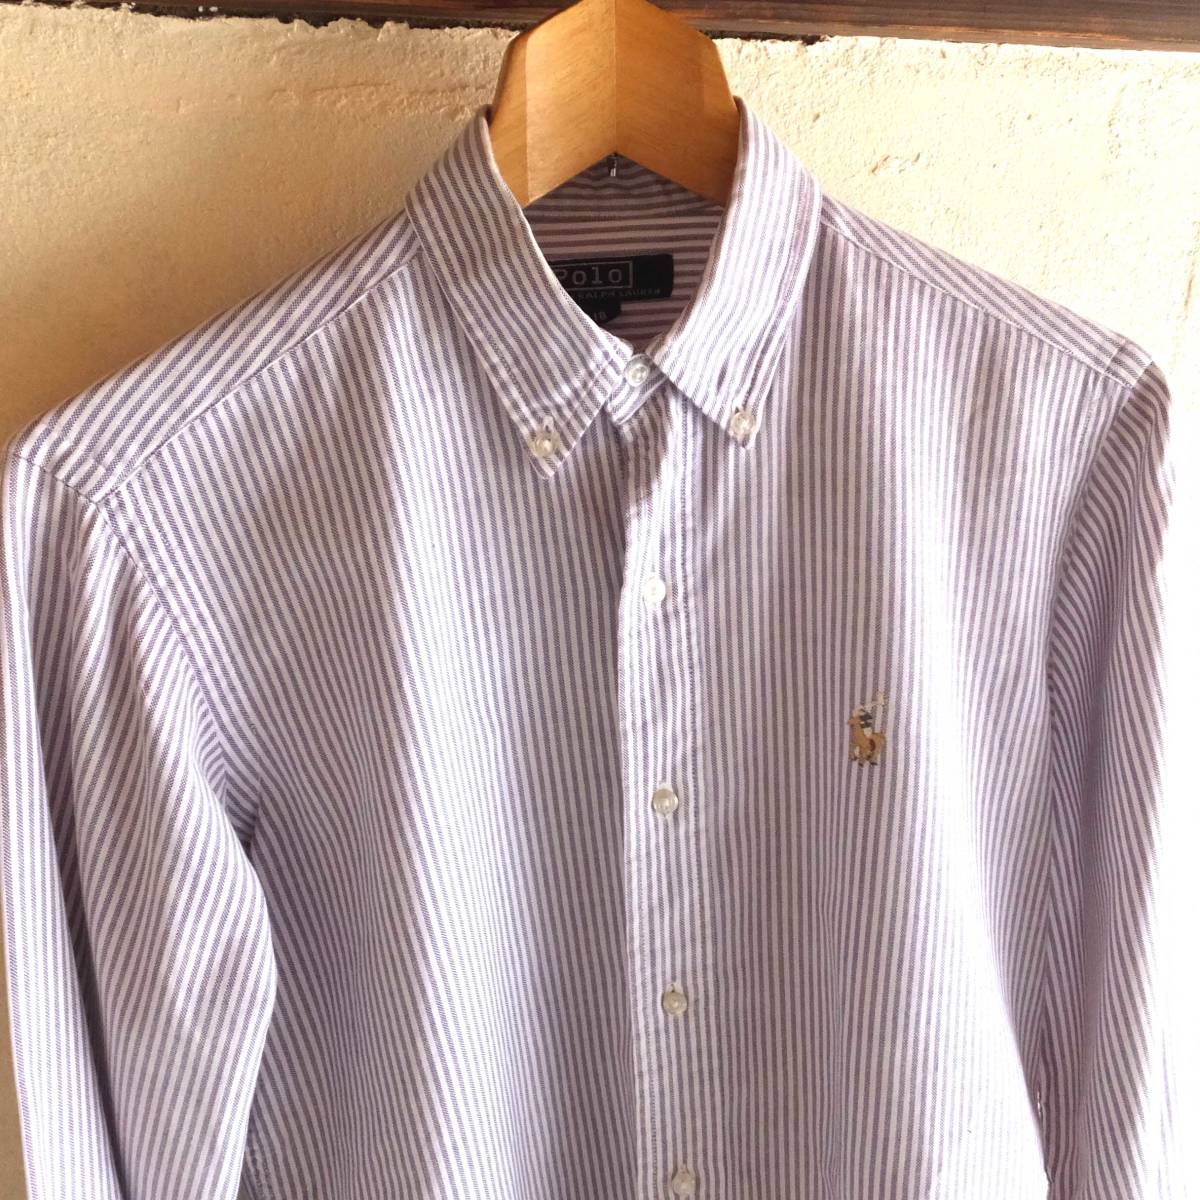  Ralph Lauren button down long sleeve shirt purple stripe size 18 90S Vintage old clothes boys size (XL?)RALPH LAUREN